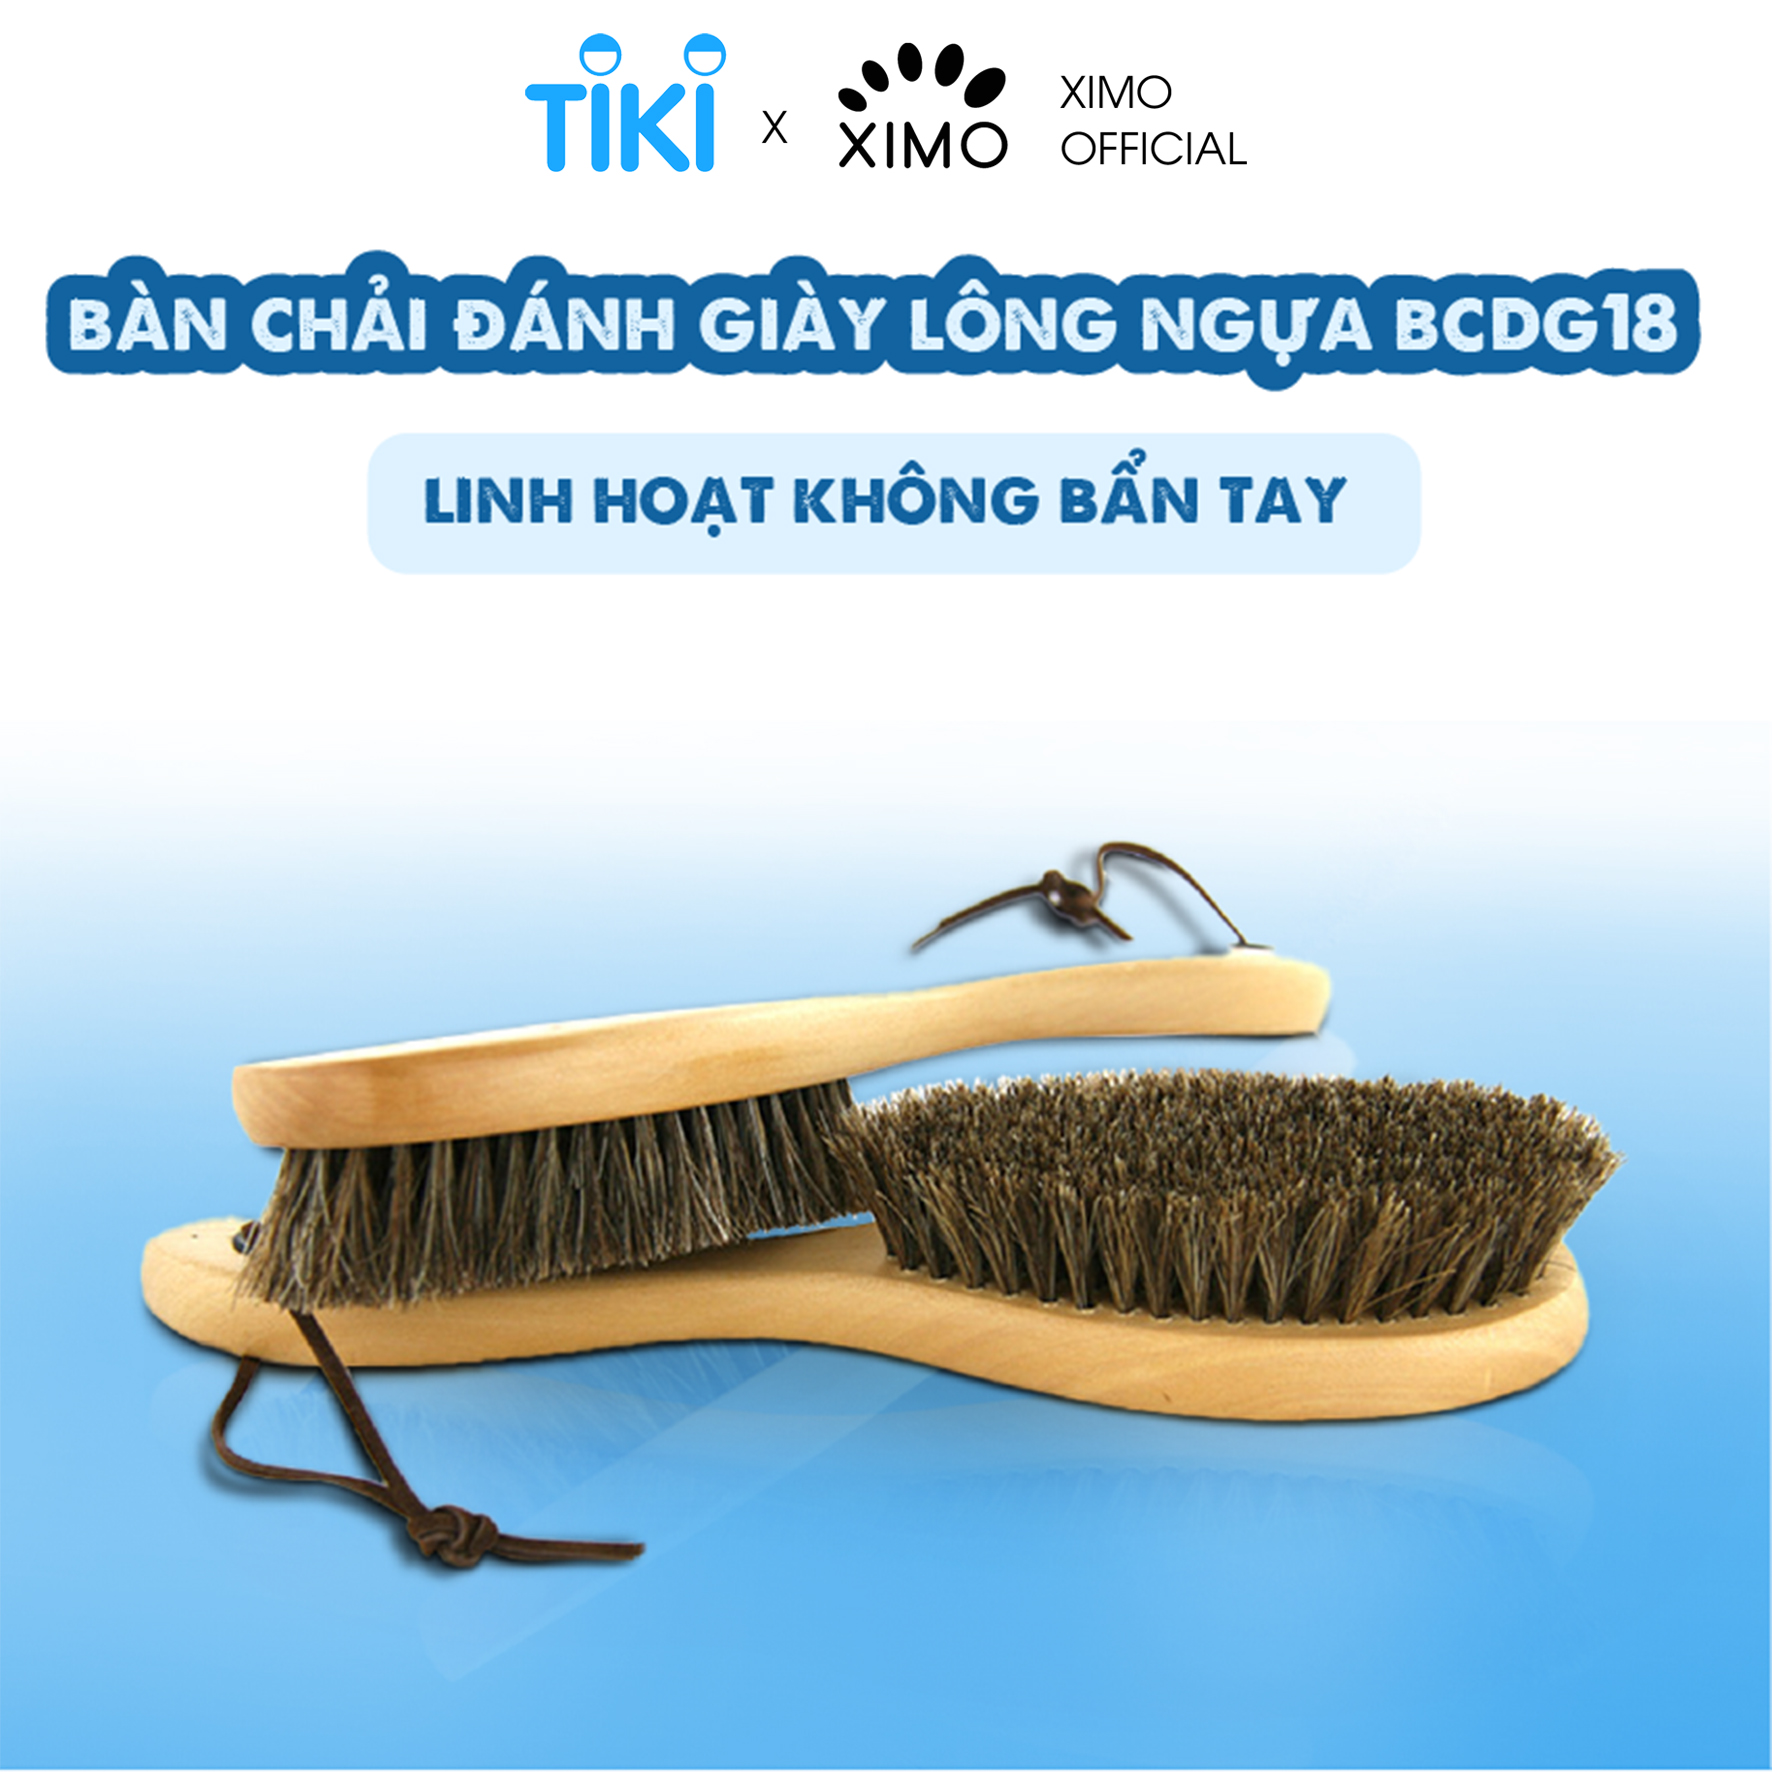 Bàn chải đánh giày XIMO làm từ lông ngựa linh hoạt giúp không bị bẩn tay (XBCDG18)